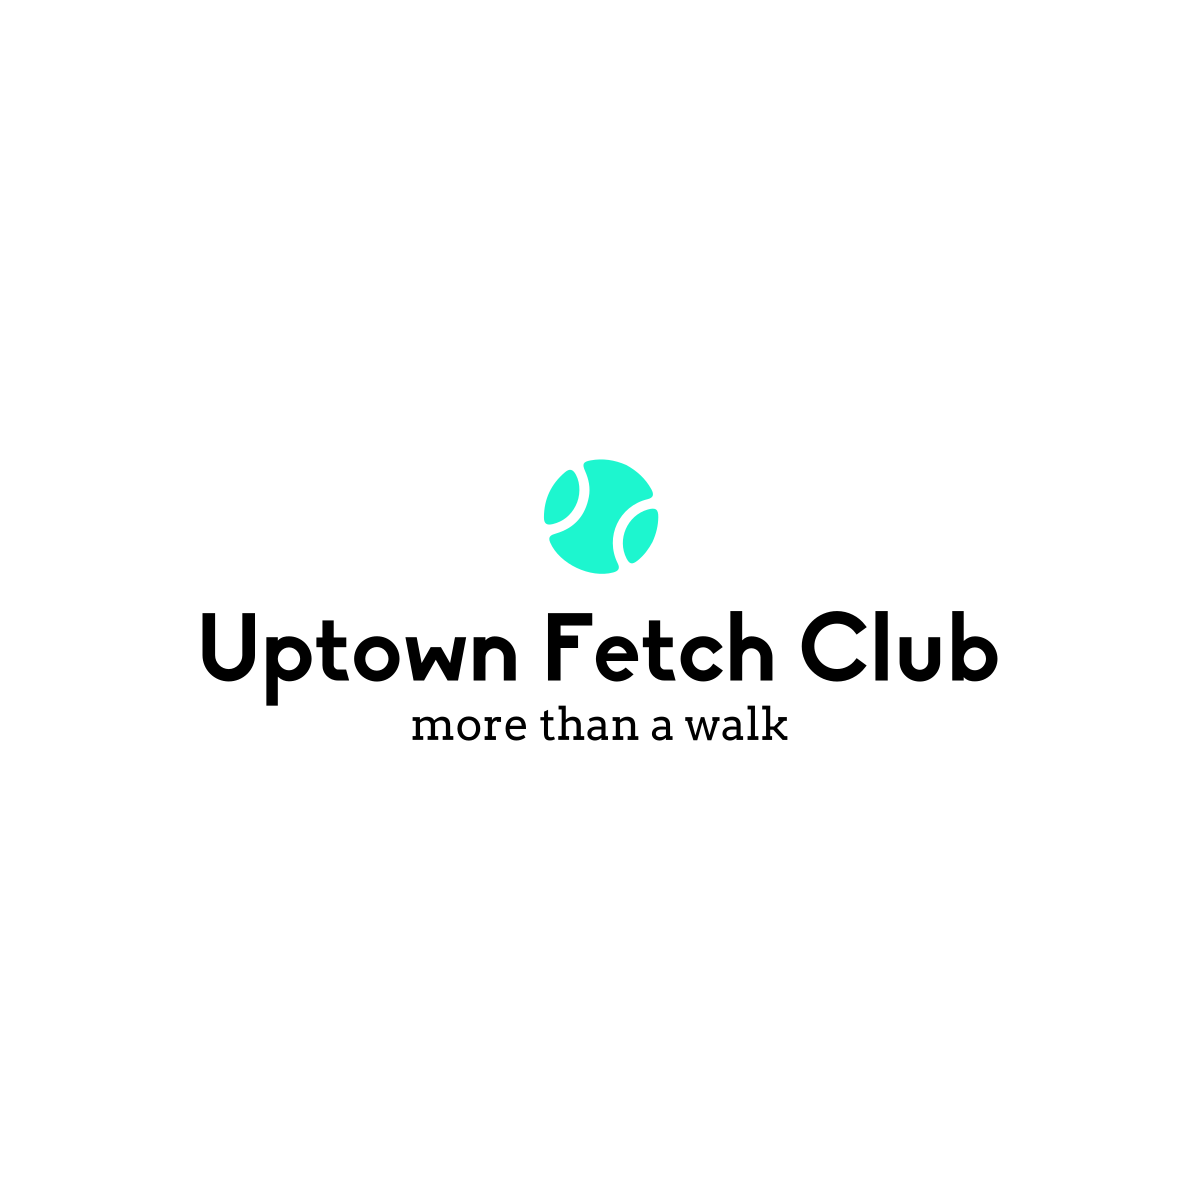 Uptown Fetch Club